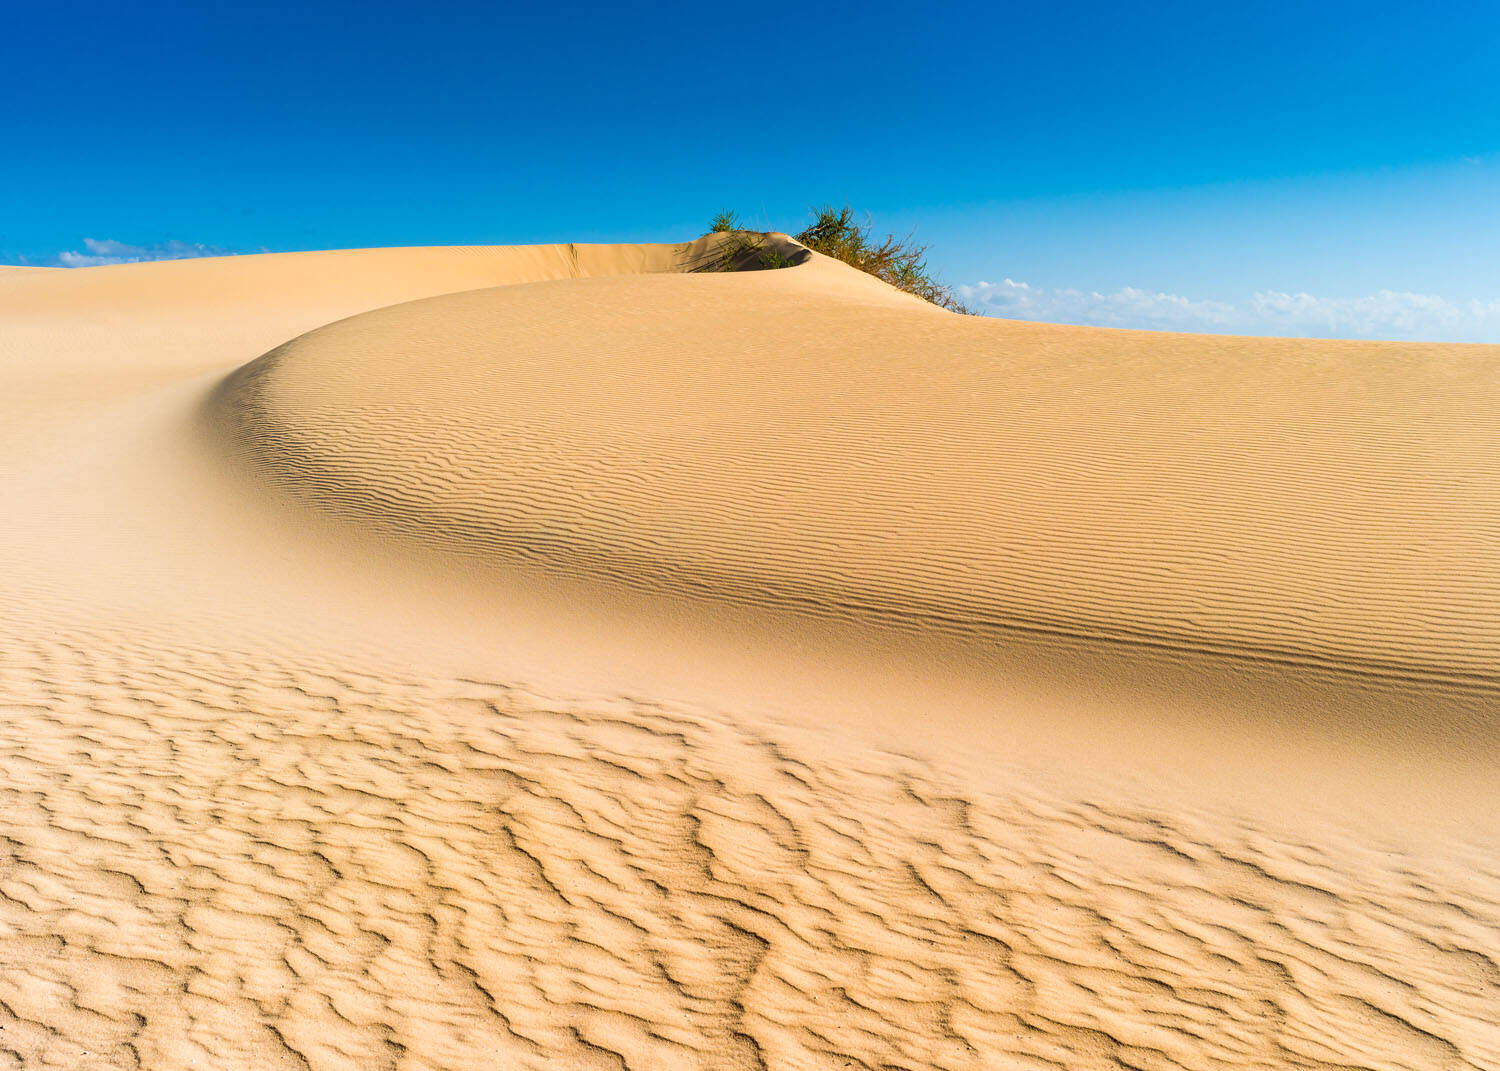 Fototapete - Wüstendüne vor leuchtend blauem Himmel sanft geschwungen mit Grasbewuchs